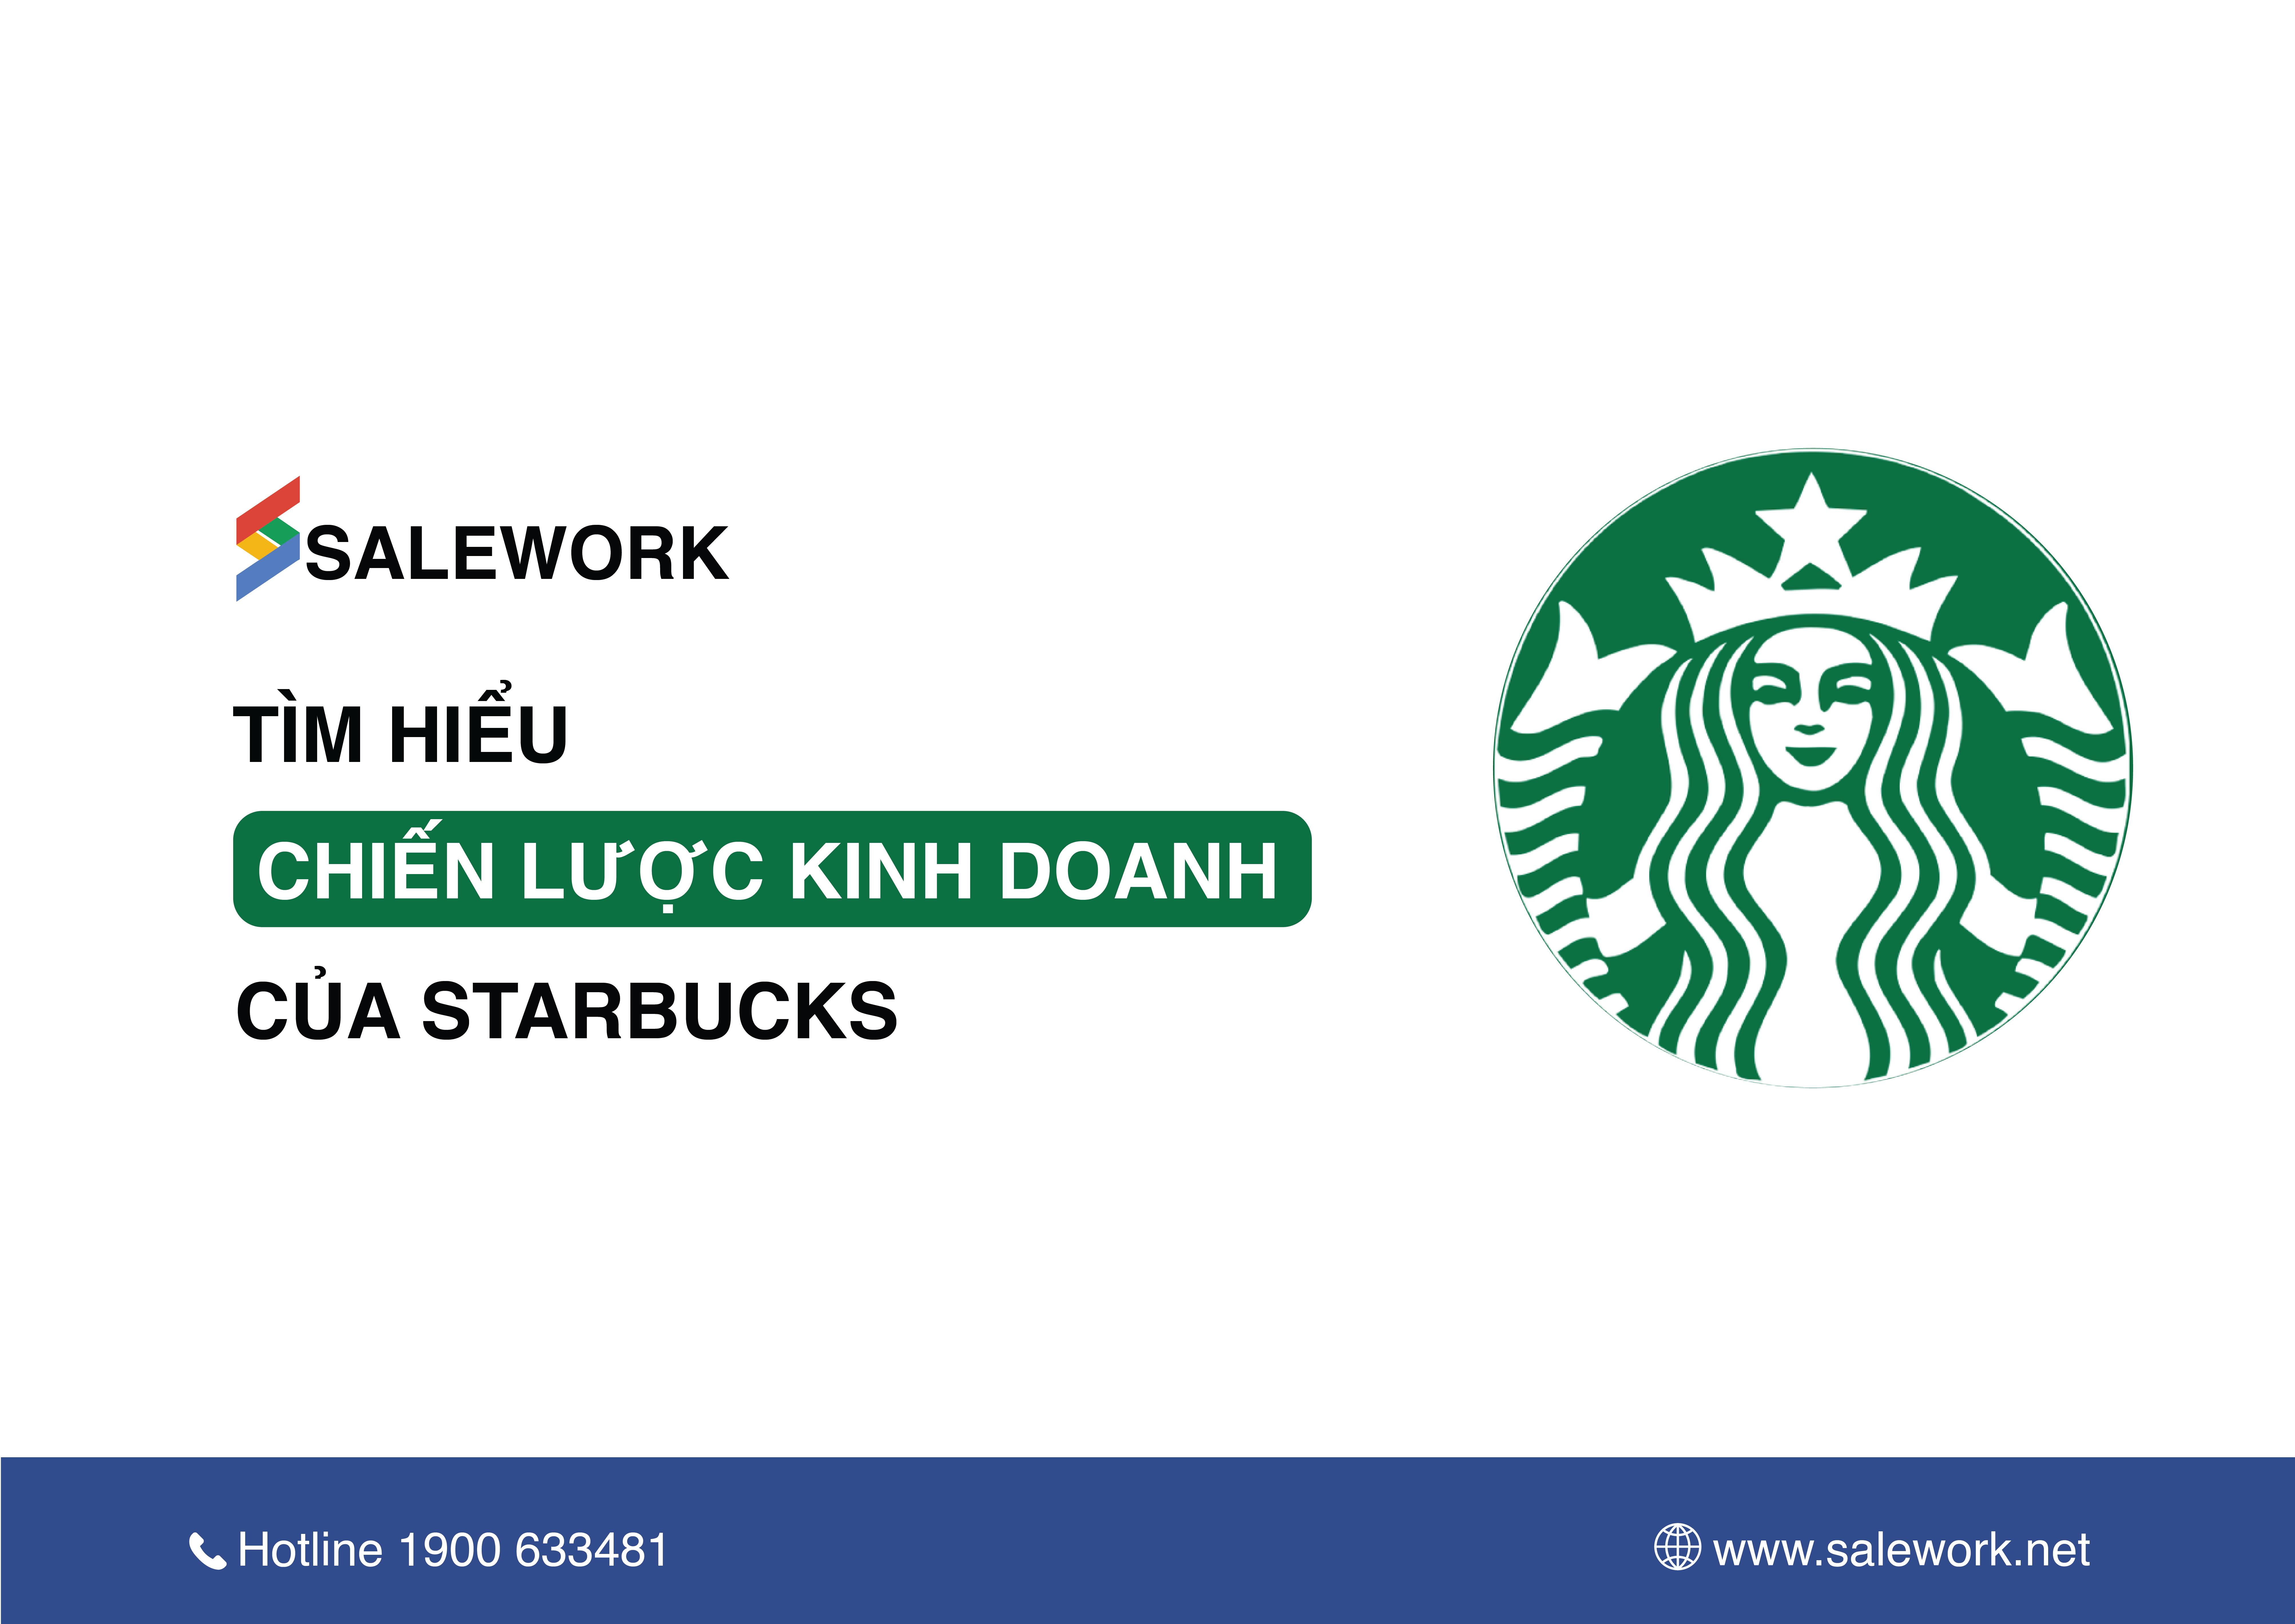 Tìm hiểu chiến lược kinh doanh của Starbucks